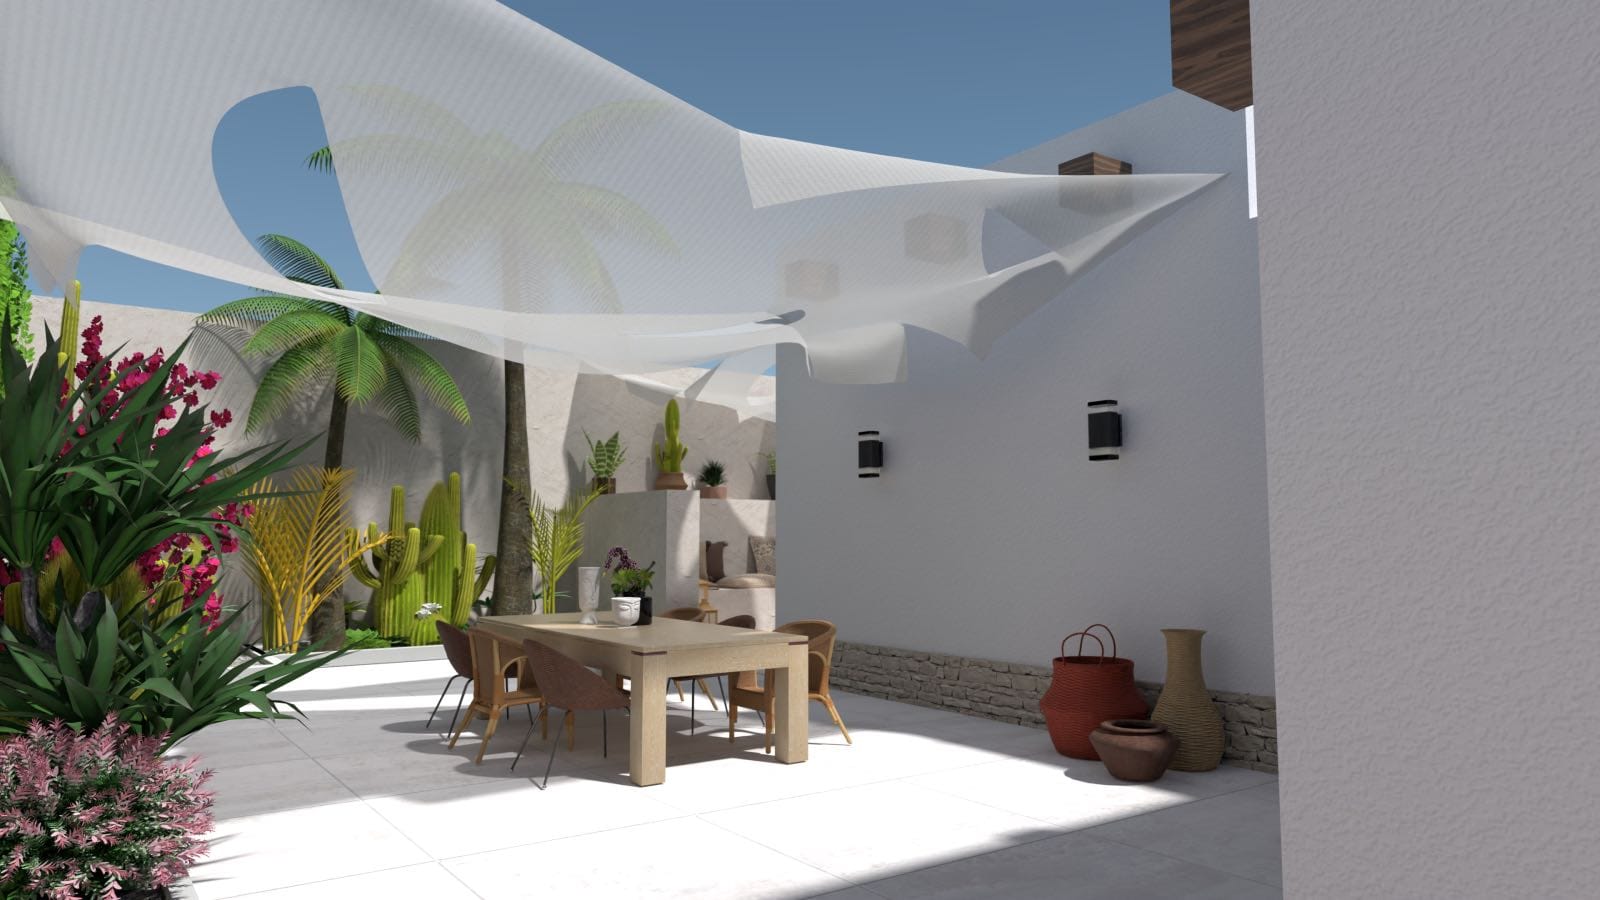 diseño de jardín de estilo mediterráneo con patio blanco, render 3d, comedor